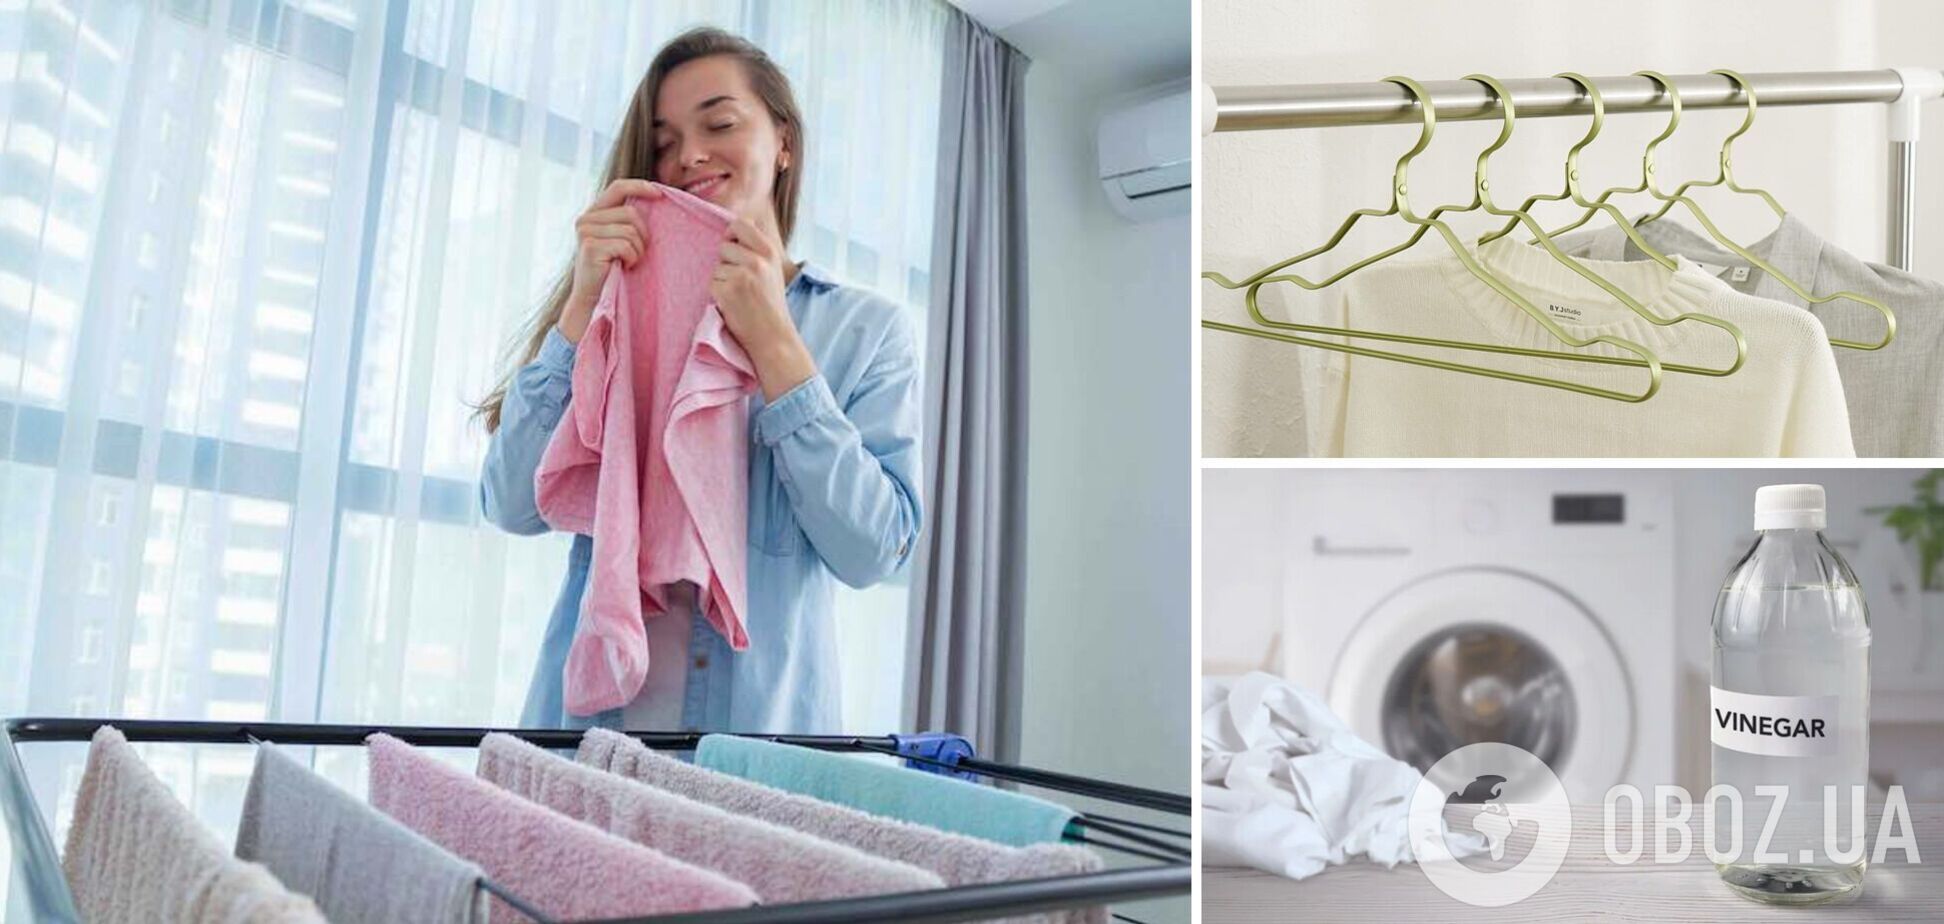 Як висушити одяг, аби не було запаху вогкості: в мережі розкрили секрет